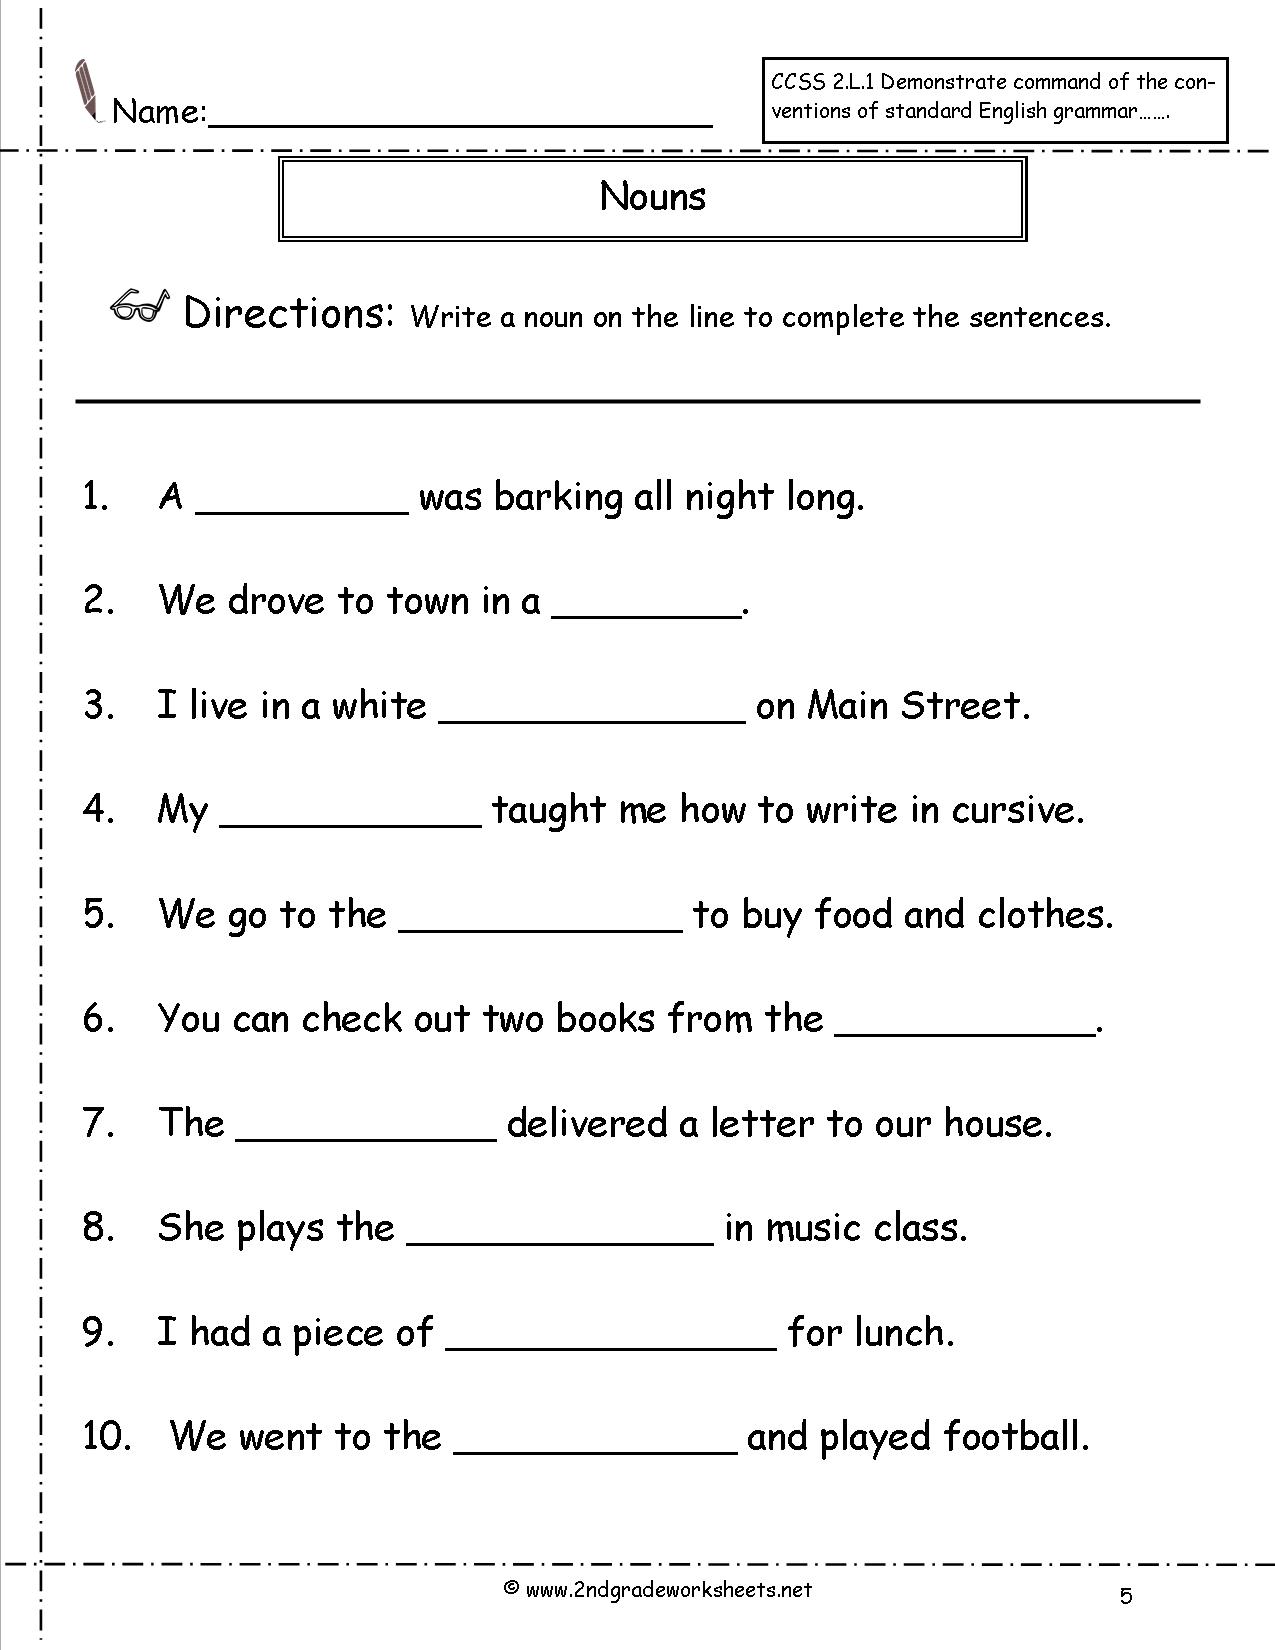 categorize-nouns-worksheet-worksheets-free